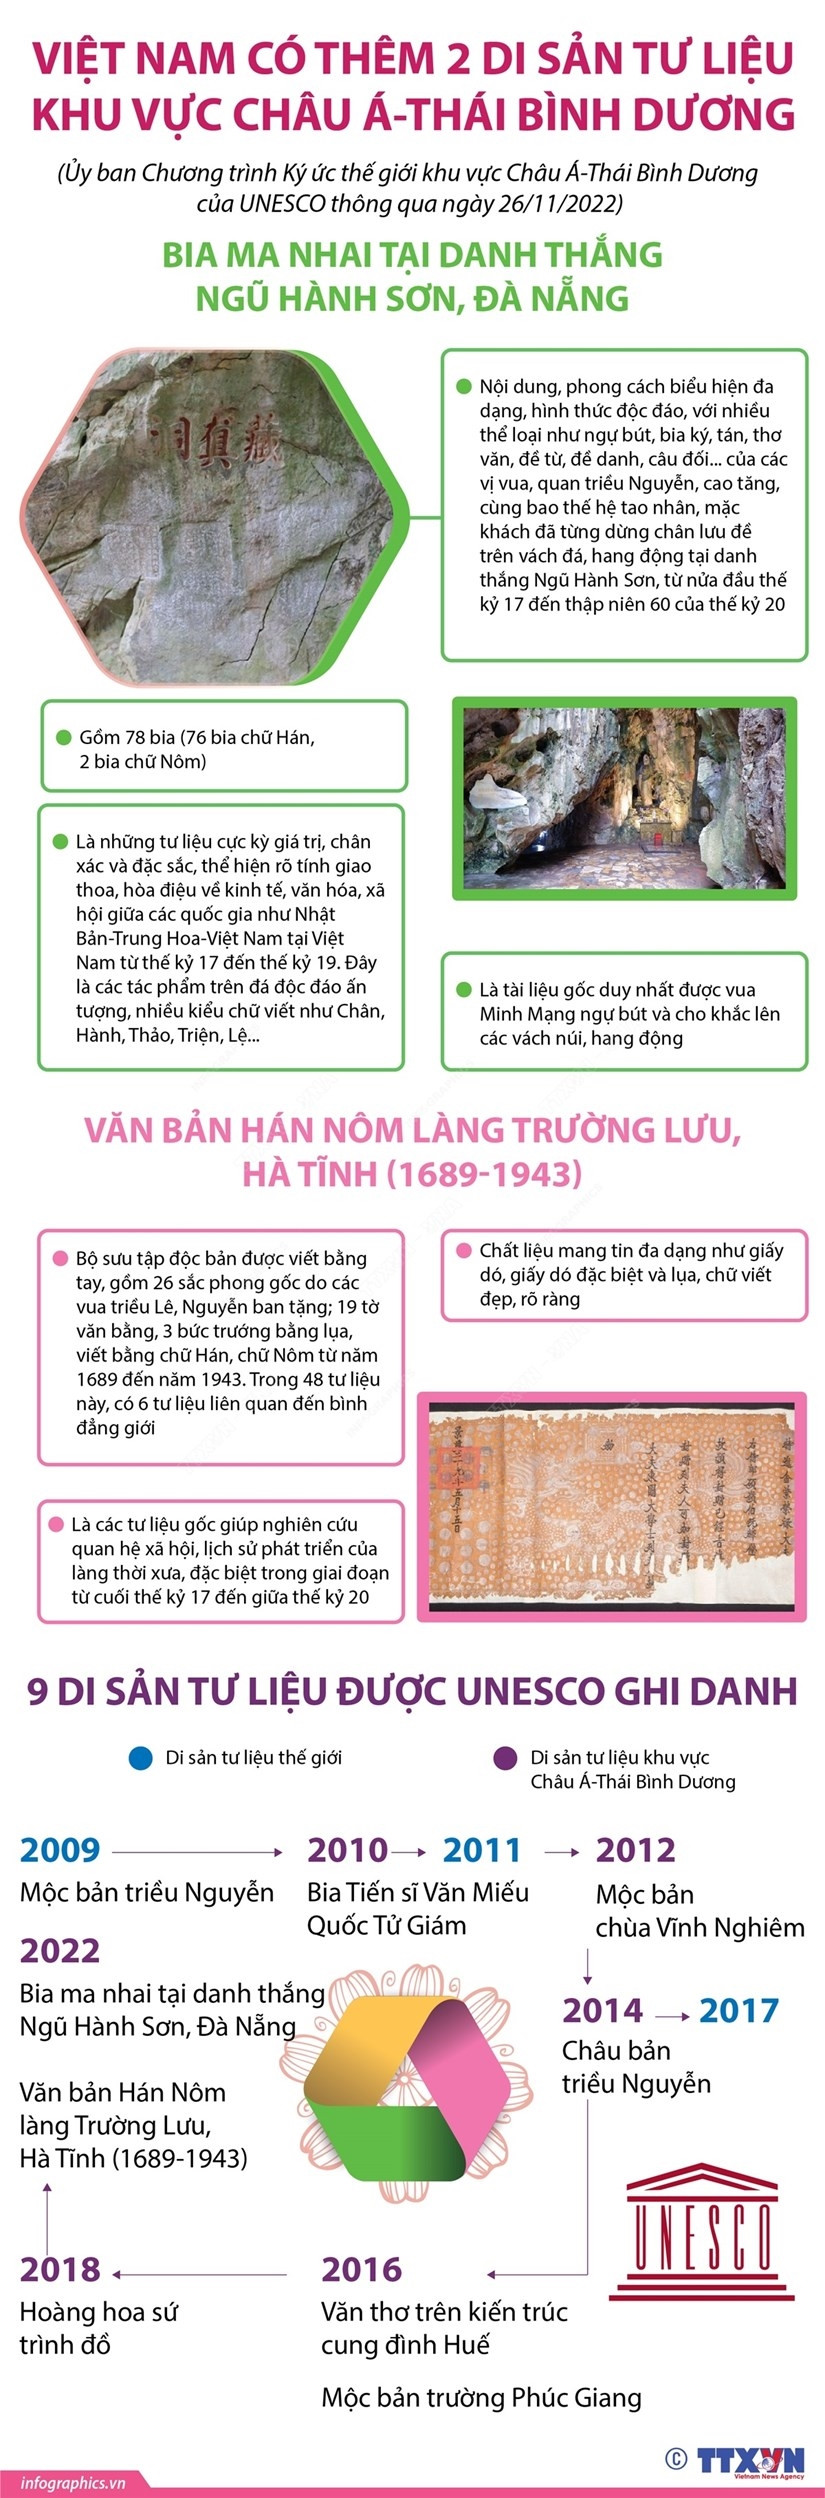 [Infographics] Viet Nam co them 2 di san tu lieu khu vuc chau A-TBD hinh anh 1